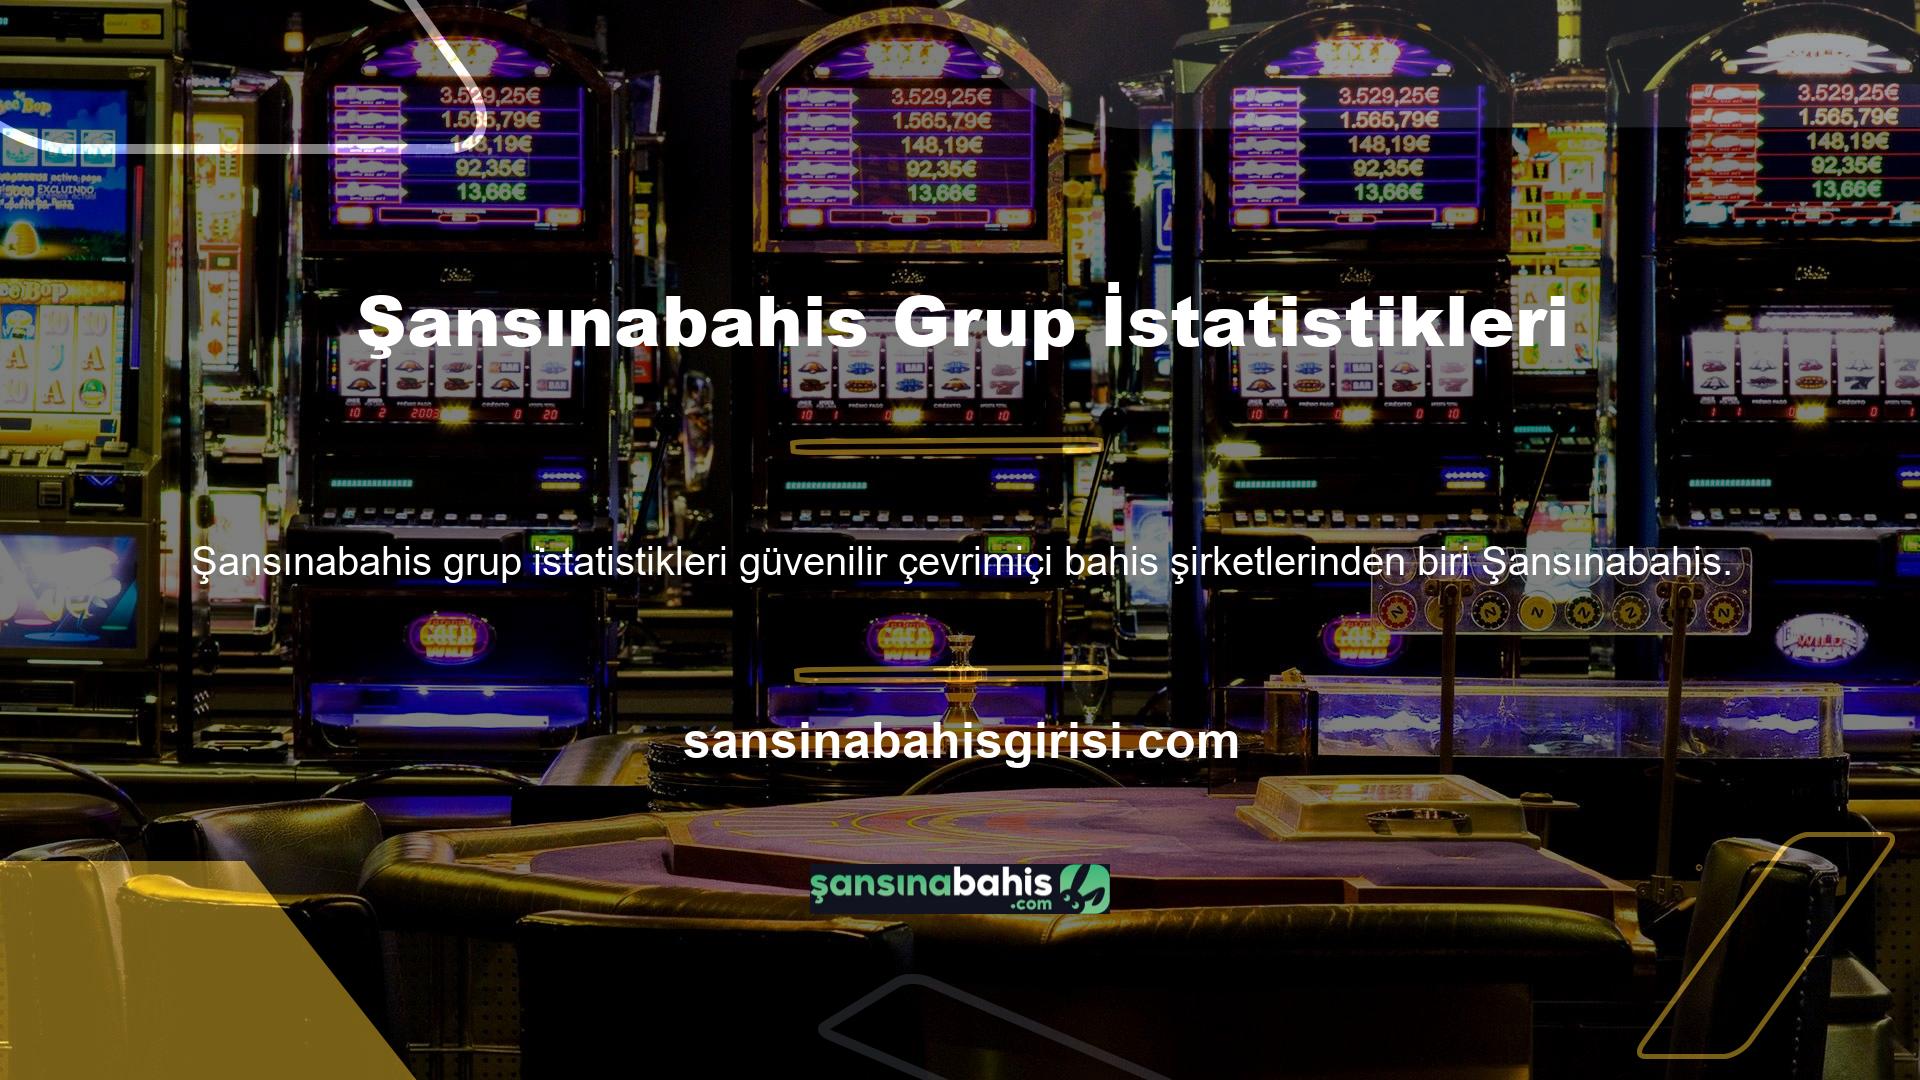 Türkiye'de herhangi bir poker oyununa katılanlar için Şansınabahis kaynak olarak gördüğü güvenilir firmalardan biridir